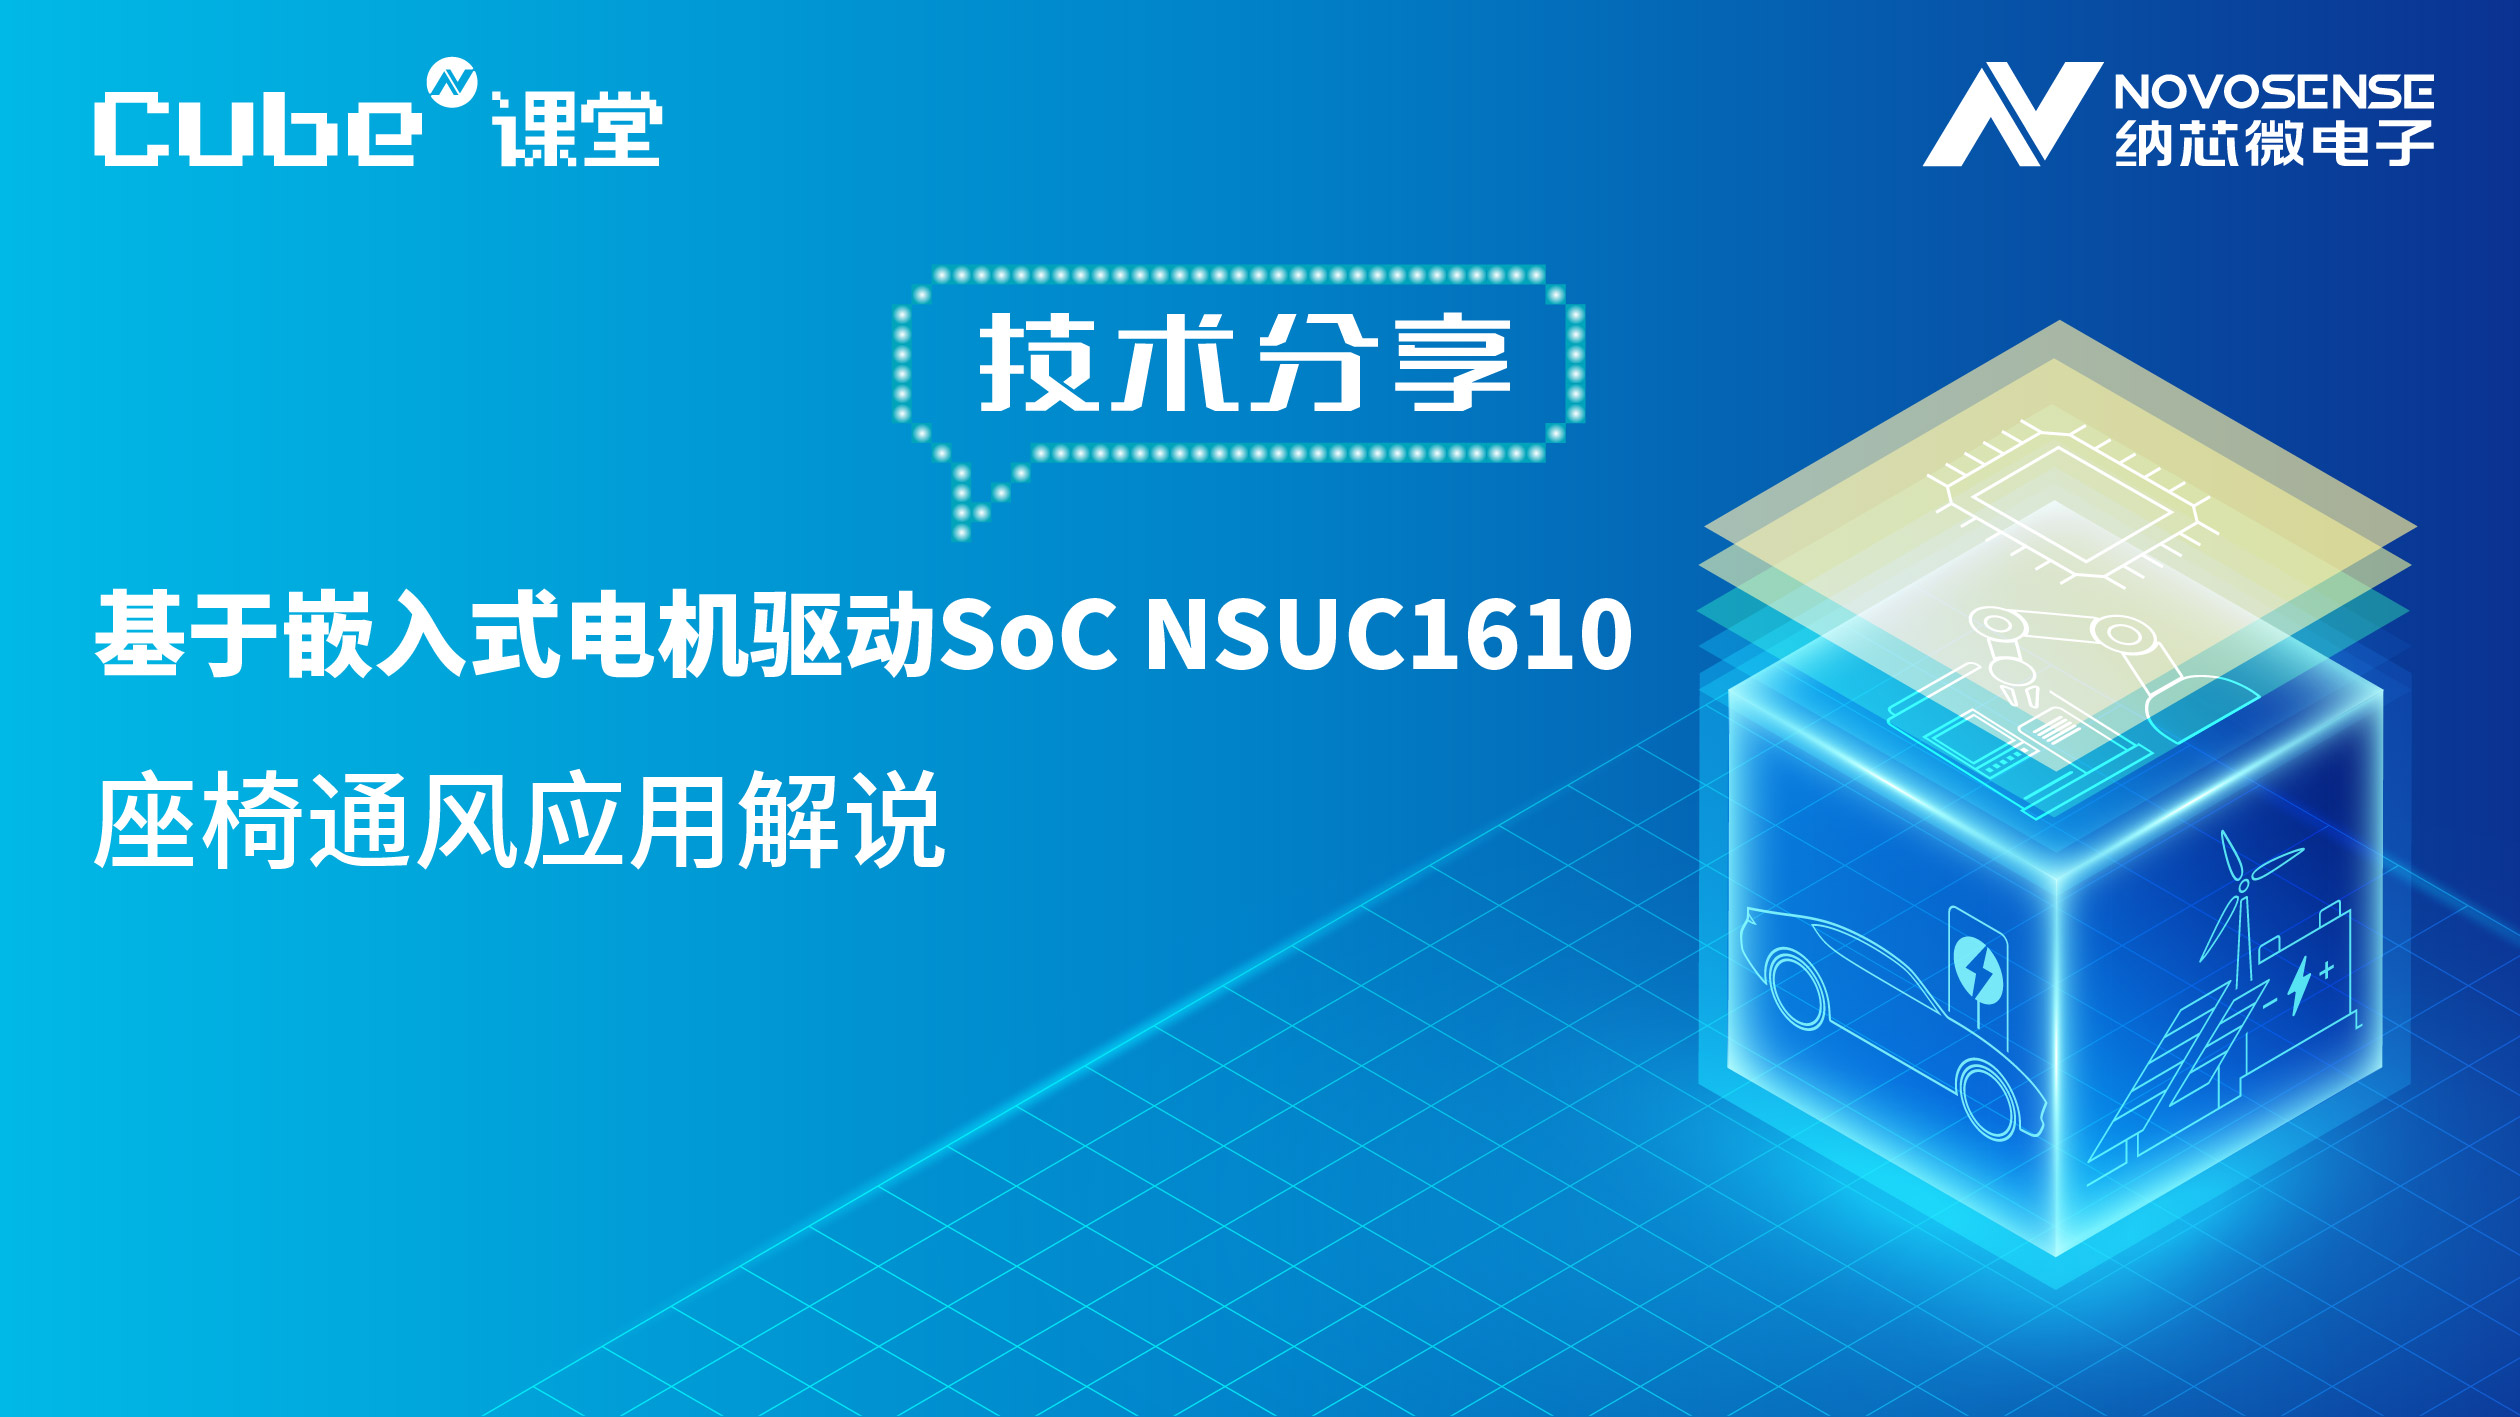 Cube N课堂 | 嵌入式电机驱动SoC NSUC1610的座椅通风应用解析